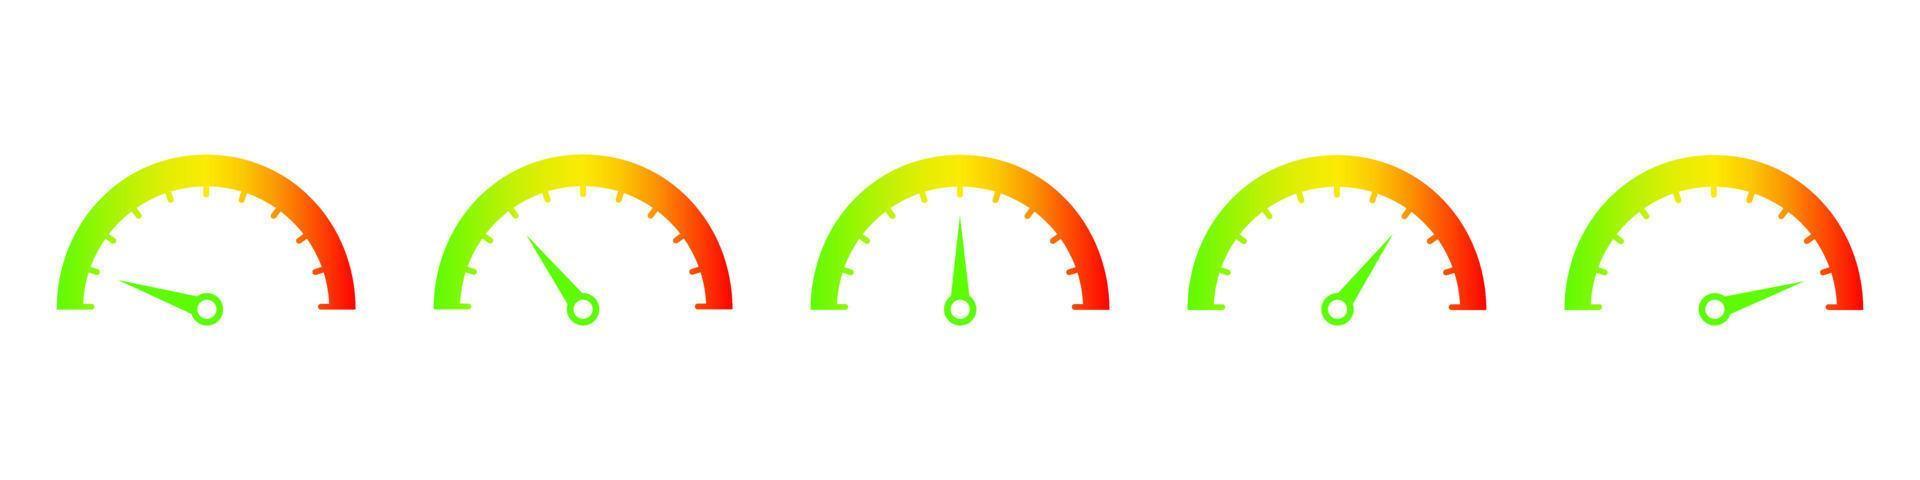 velocímetros que muestran el icono de velocidad ascendente. indicador con flecha verde que comienza el progreso y se convierte en rojo rendimiento de evaluación peligrosa y calidad de vector